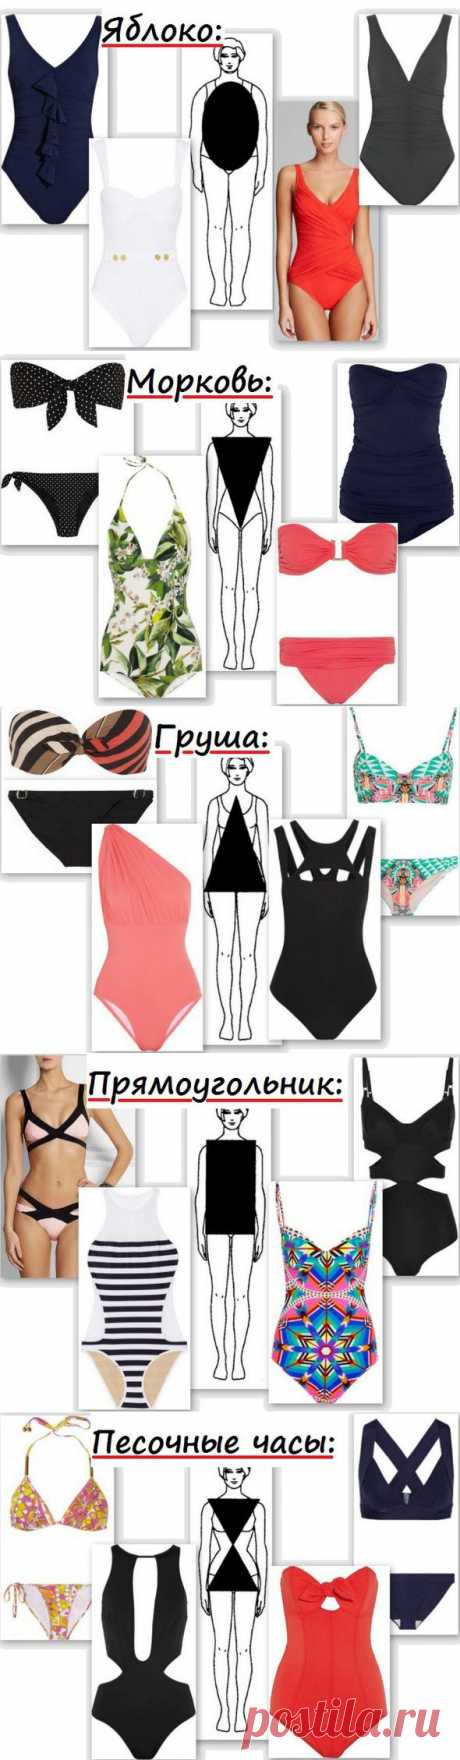 Пляжный сезон 2014: актуальные купальники для разных типов фигур | ПолонСил.ру - социальная сеть здоровья